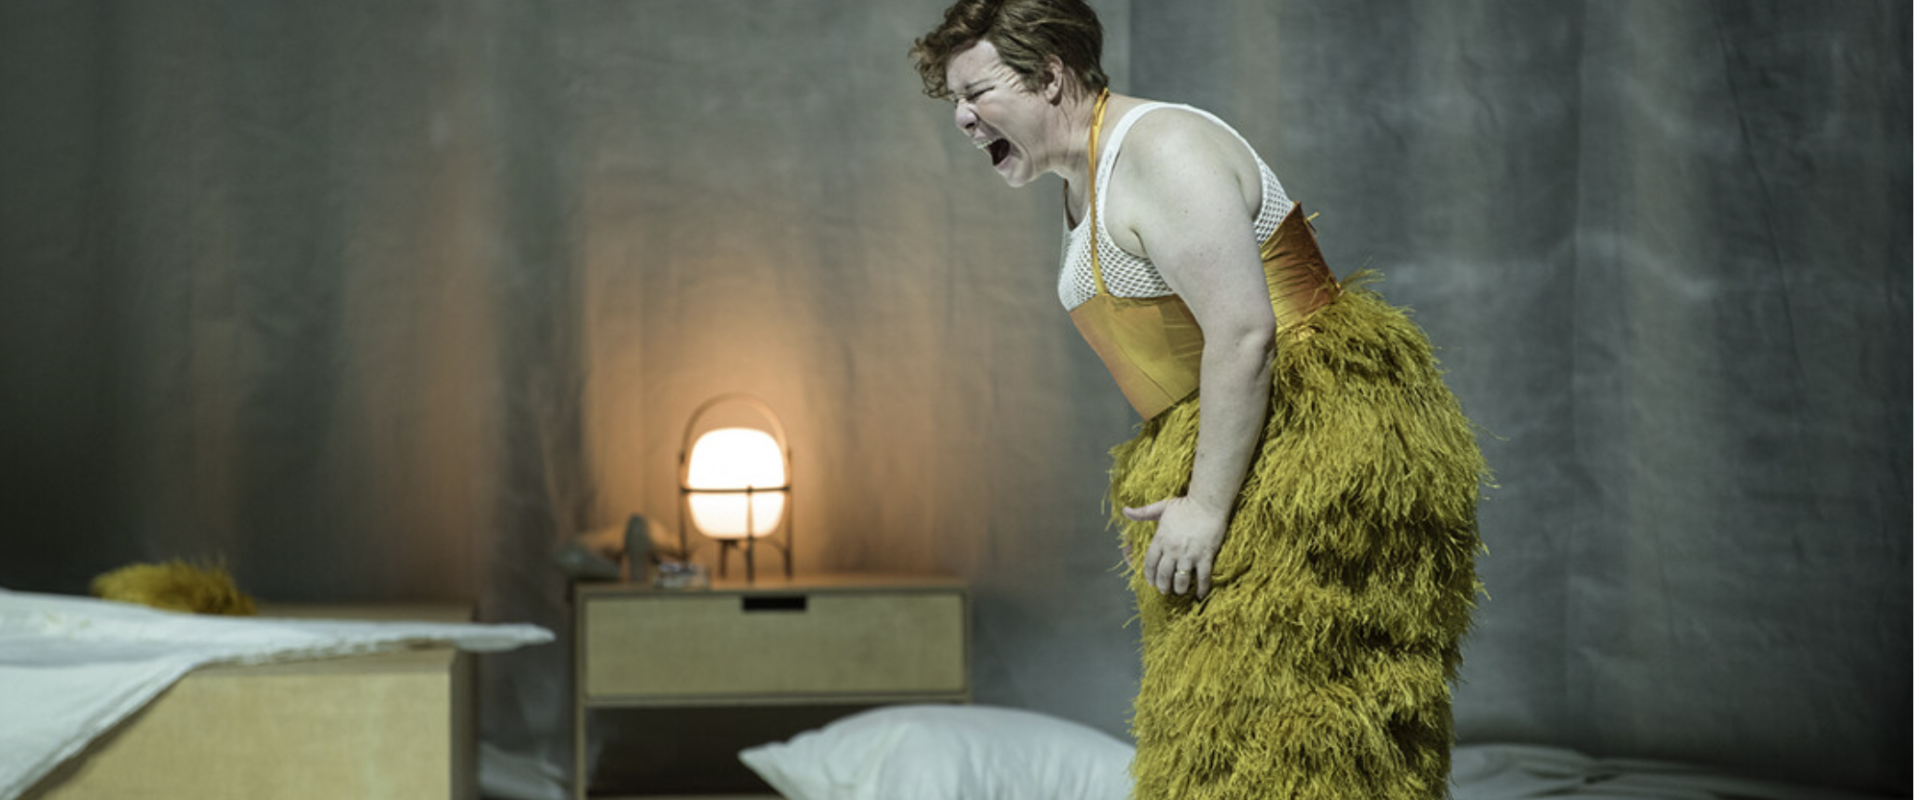 Krystian Lada reżyseruje operę o Lili Elbe w teatrze w St. Gallen